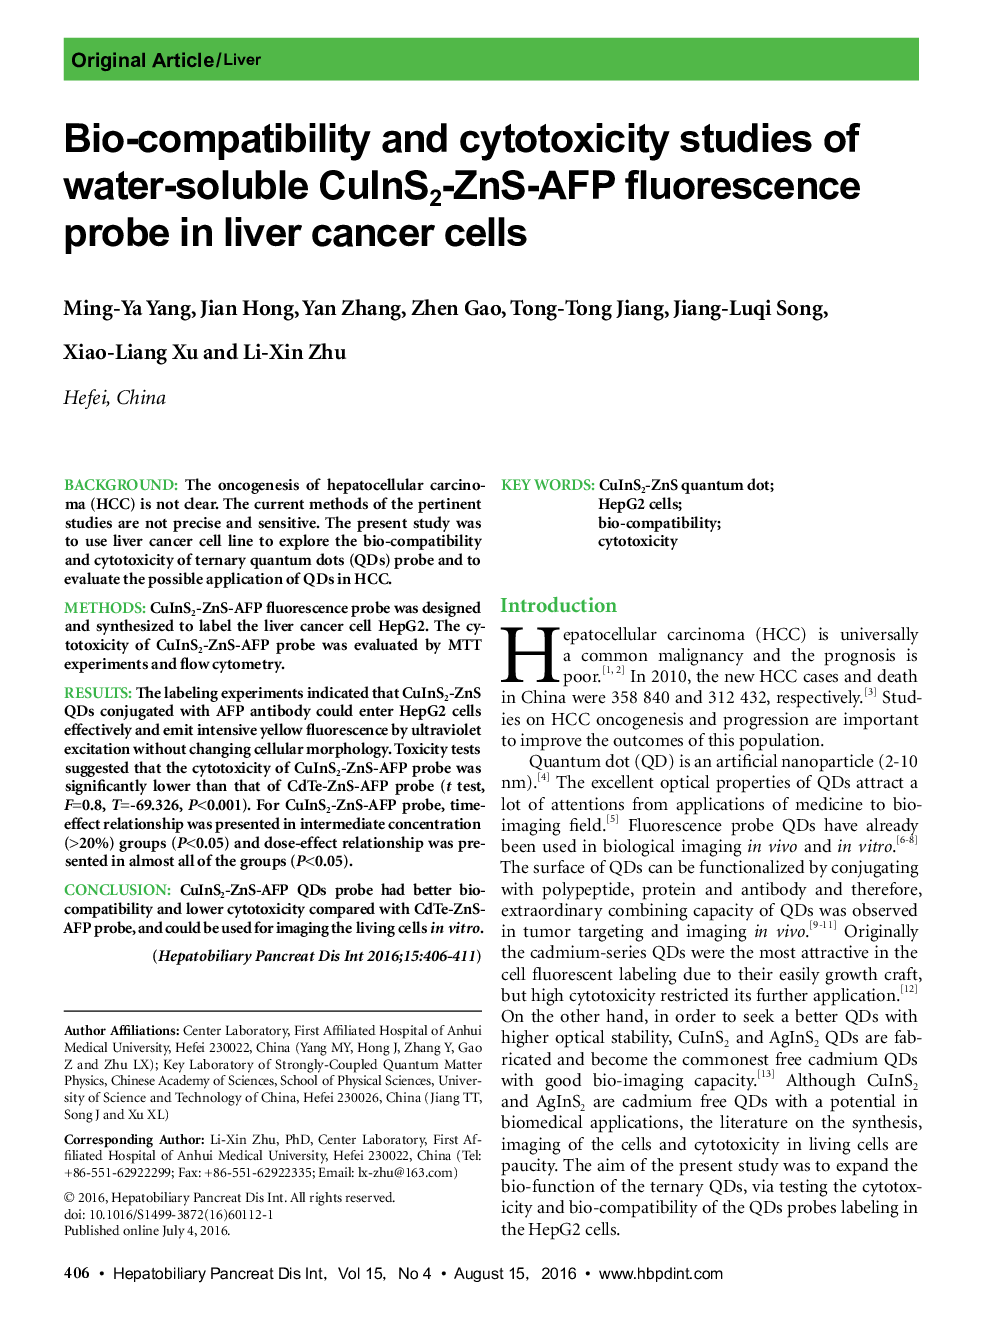 مطالعات بیولوژیکی و بررسی سمیت پروب فلورسانس CuInS2-ZnS-AFP محلول در آب در سلول های سرطانی کبدی